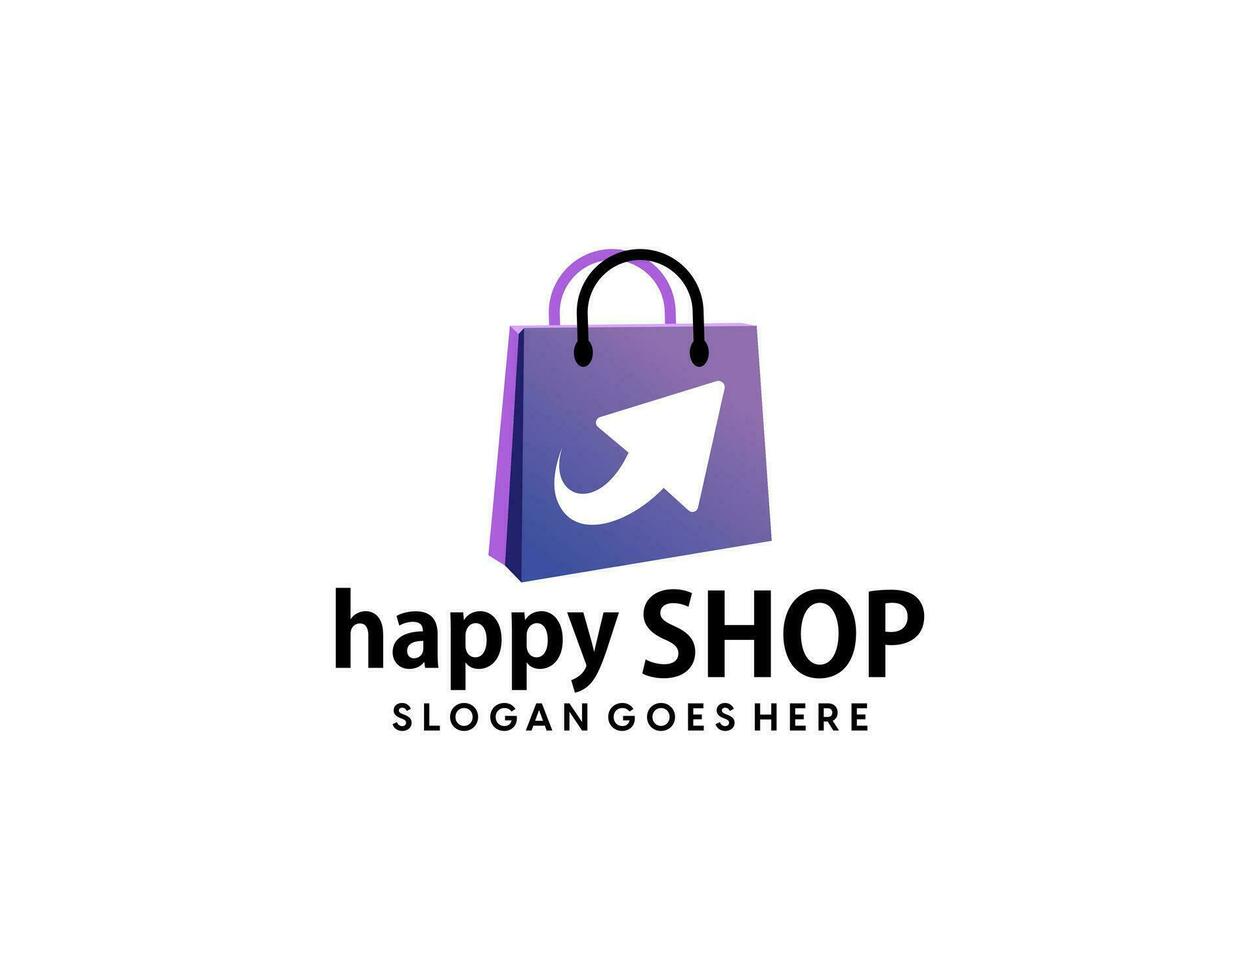 happy shop logo design template. shopping logo design stock vector